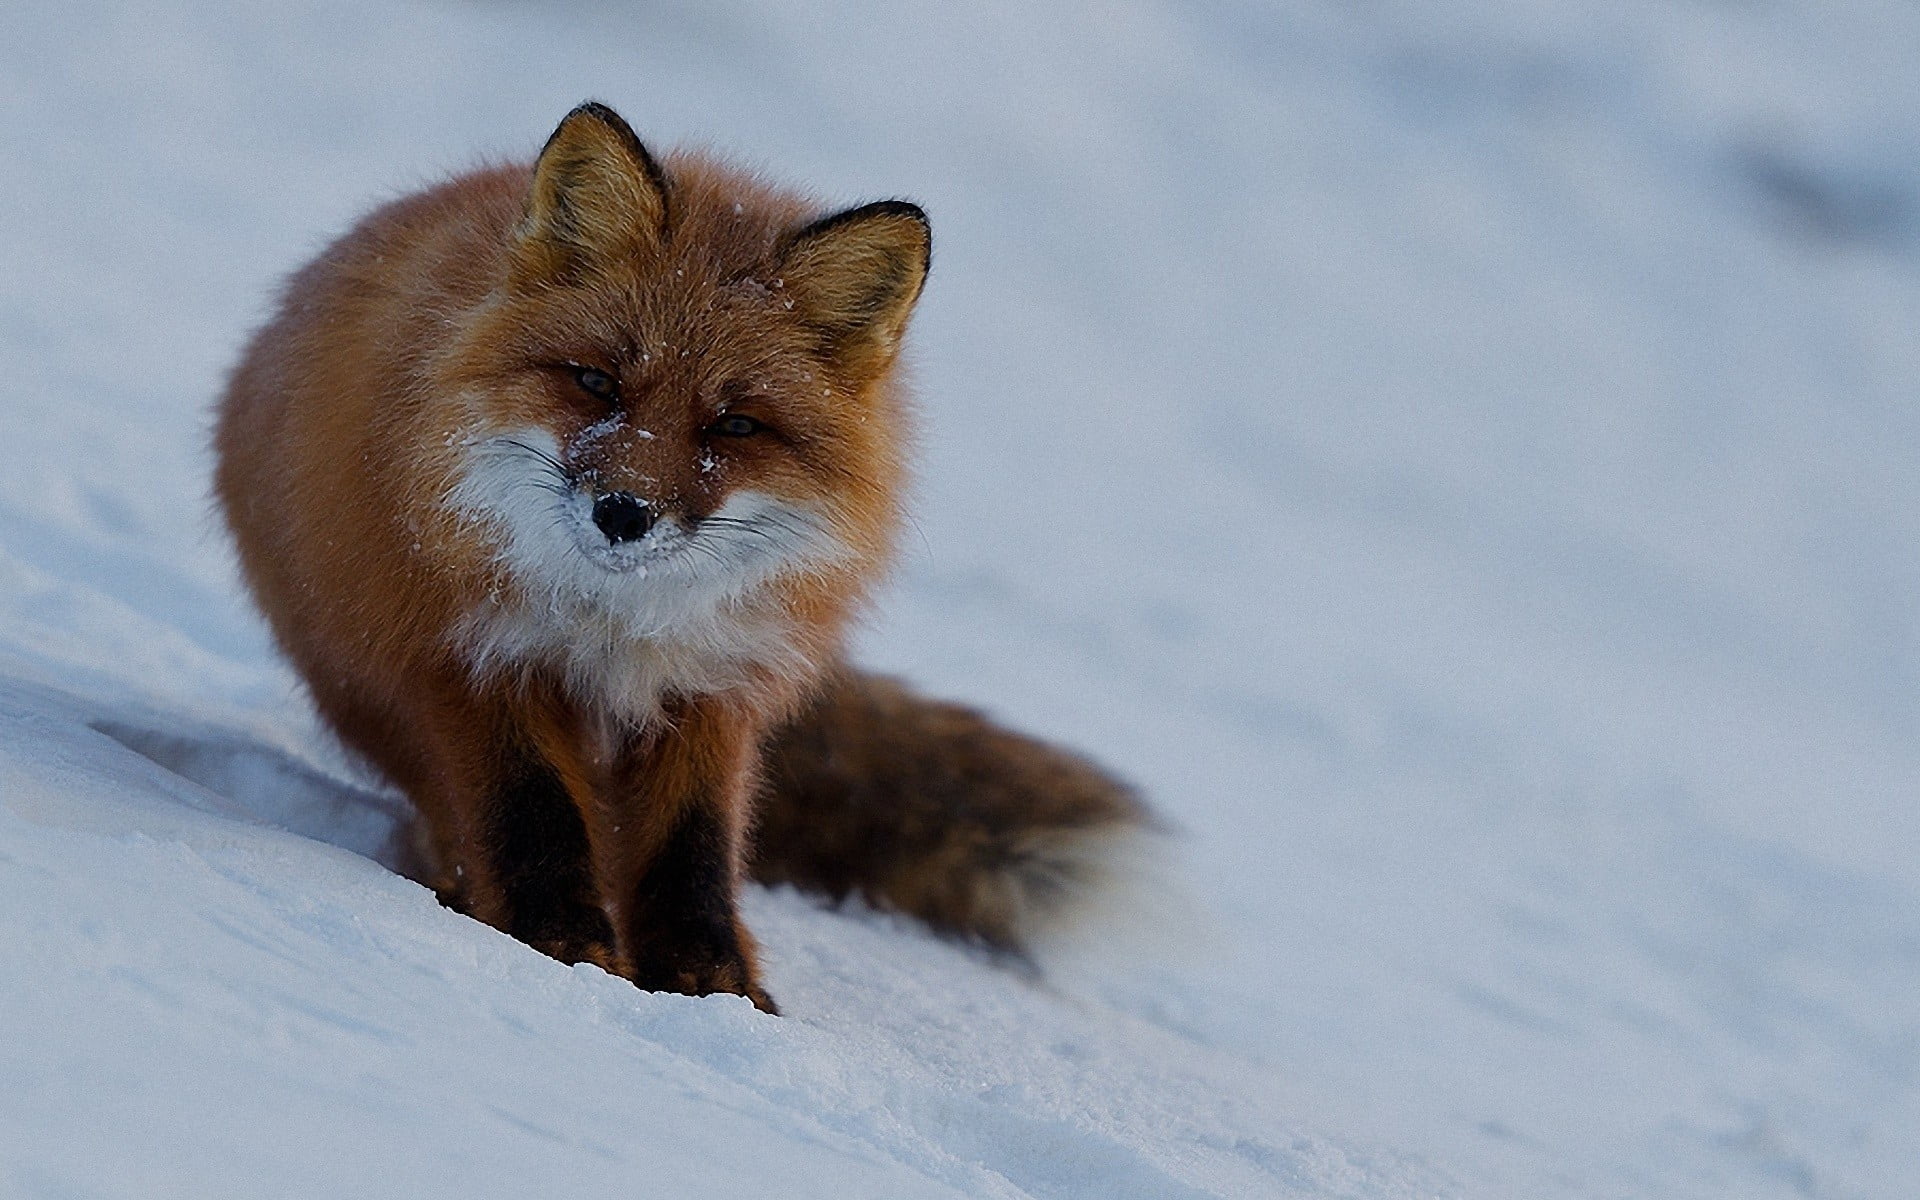 orange and white fox, animals, snow, winter, cold temperature